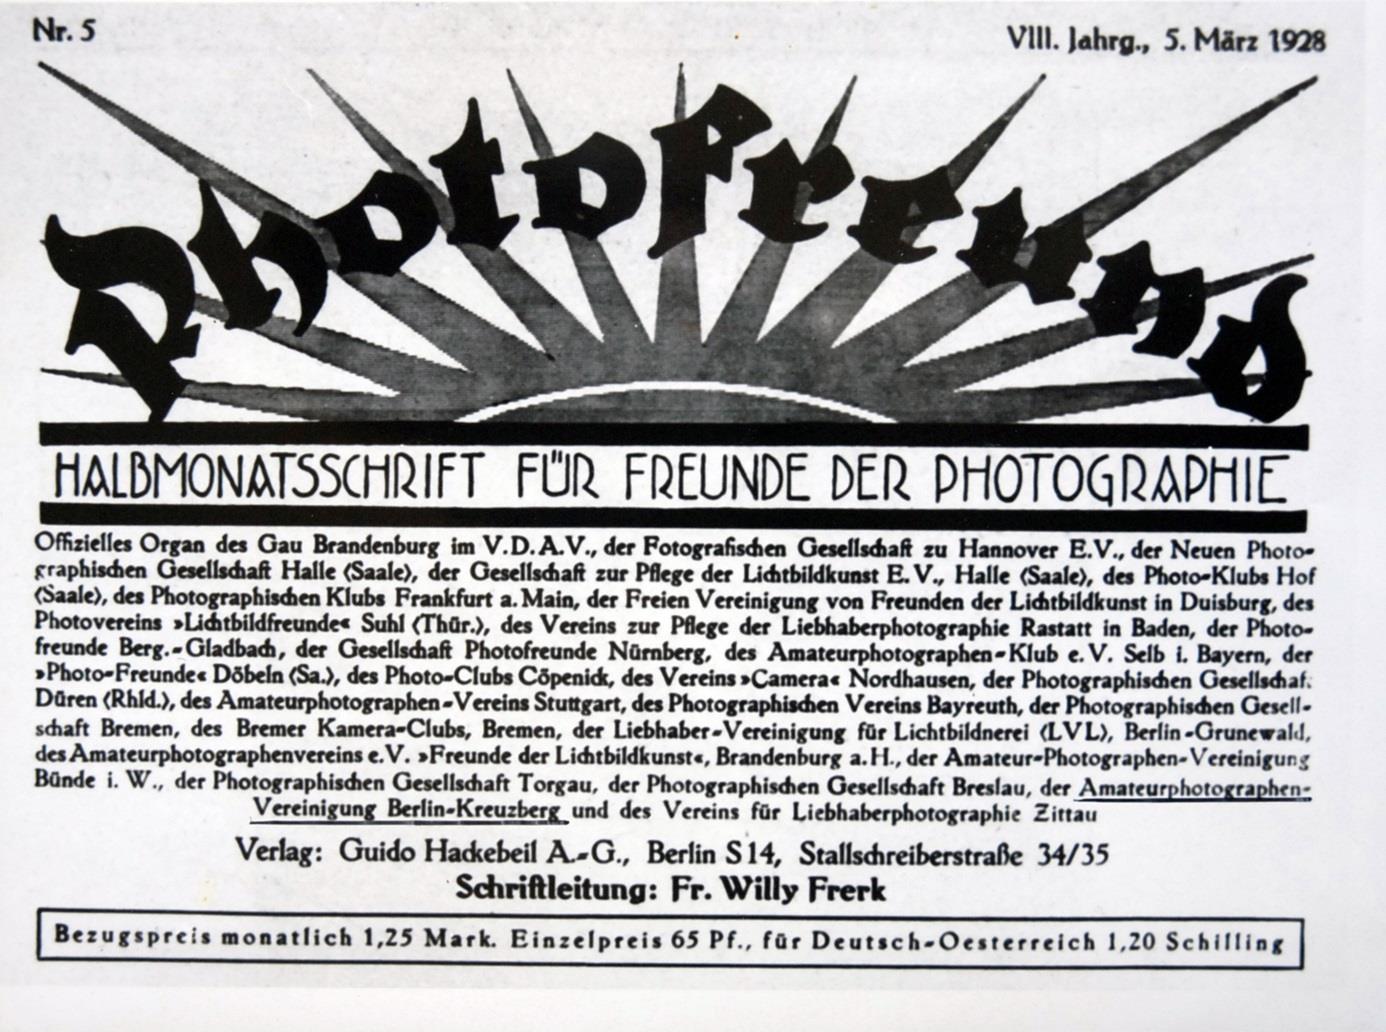 Februar anno 1928 geschah es, dass in einer Kneipe am Fuße des verschneiten Kreuzbergs einige Herren beim Bier am Kachelofen saßen und die Gründung der Amateurphotographen-Vereinigung